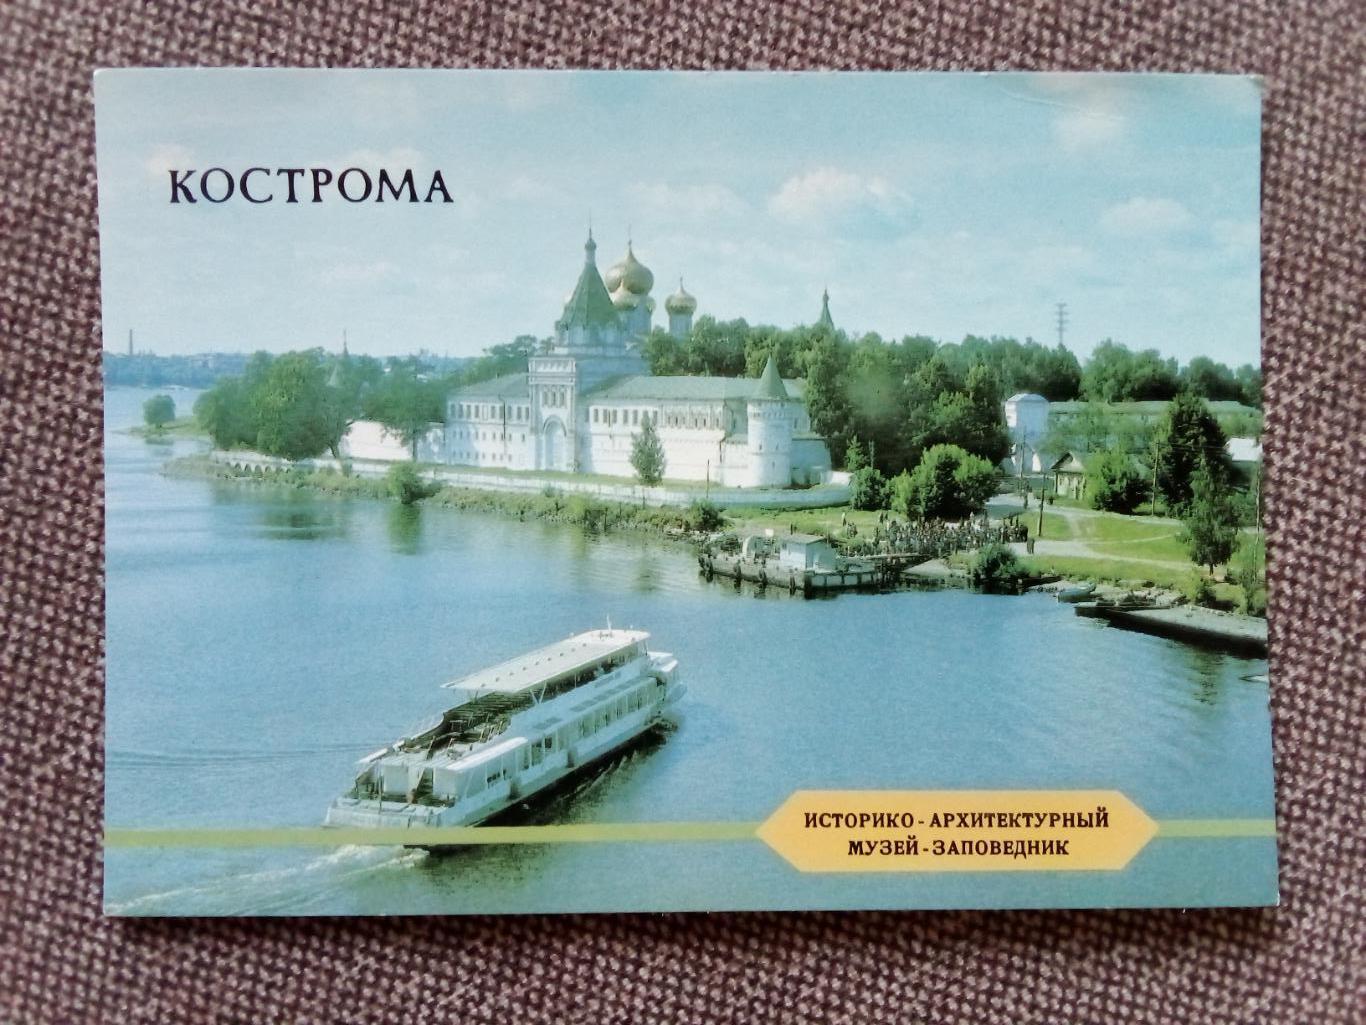 Города СССР : Кострома - Архитектурный музей 1988 г. (почтовая открытка с маркой